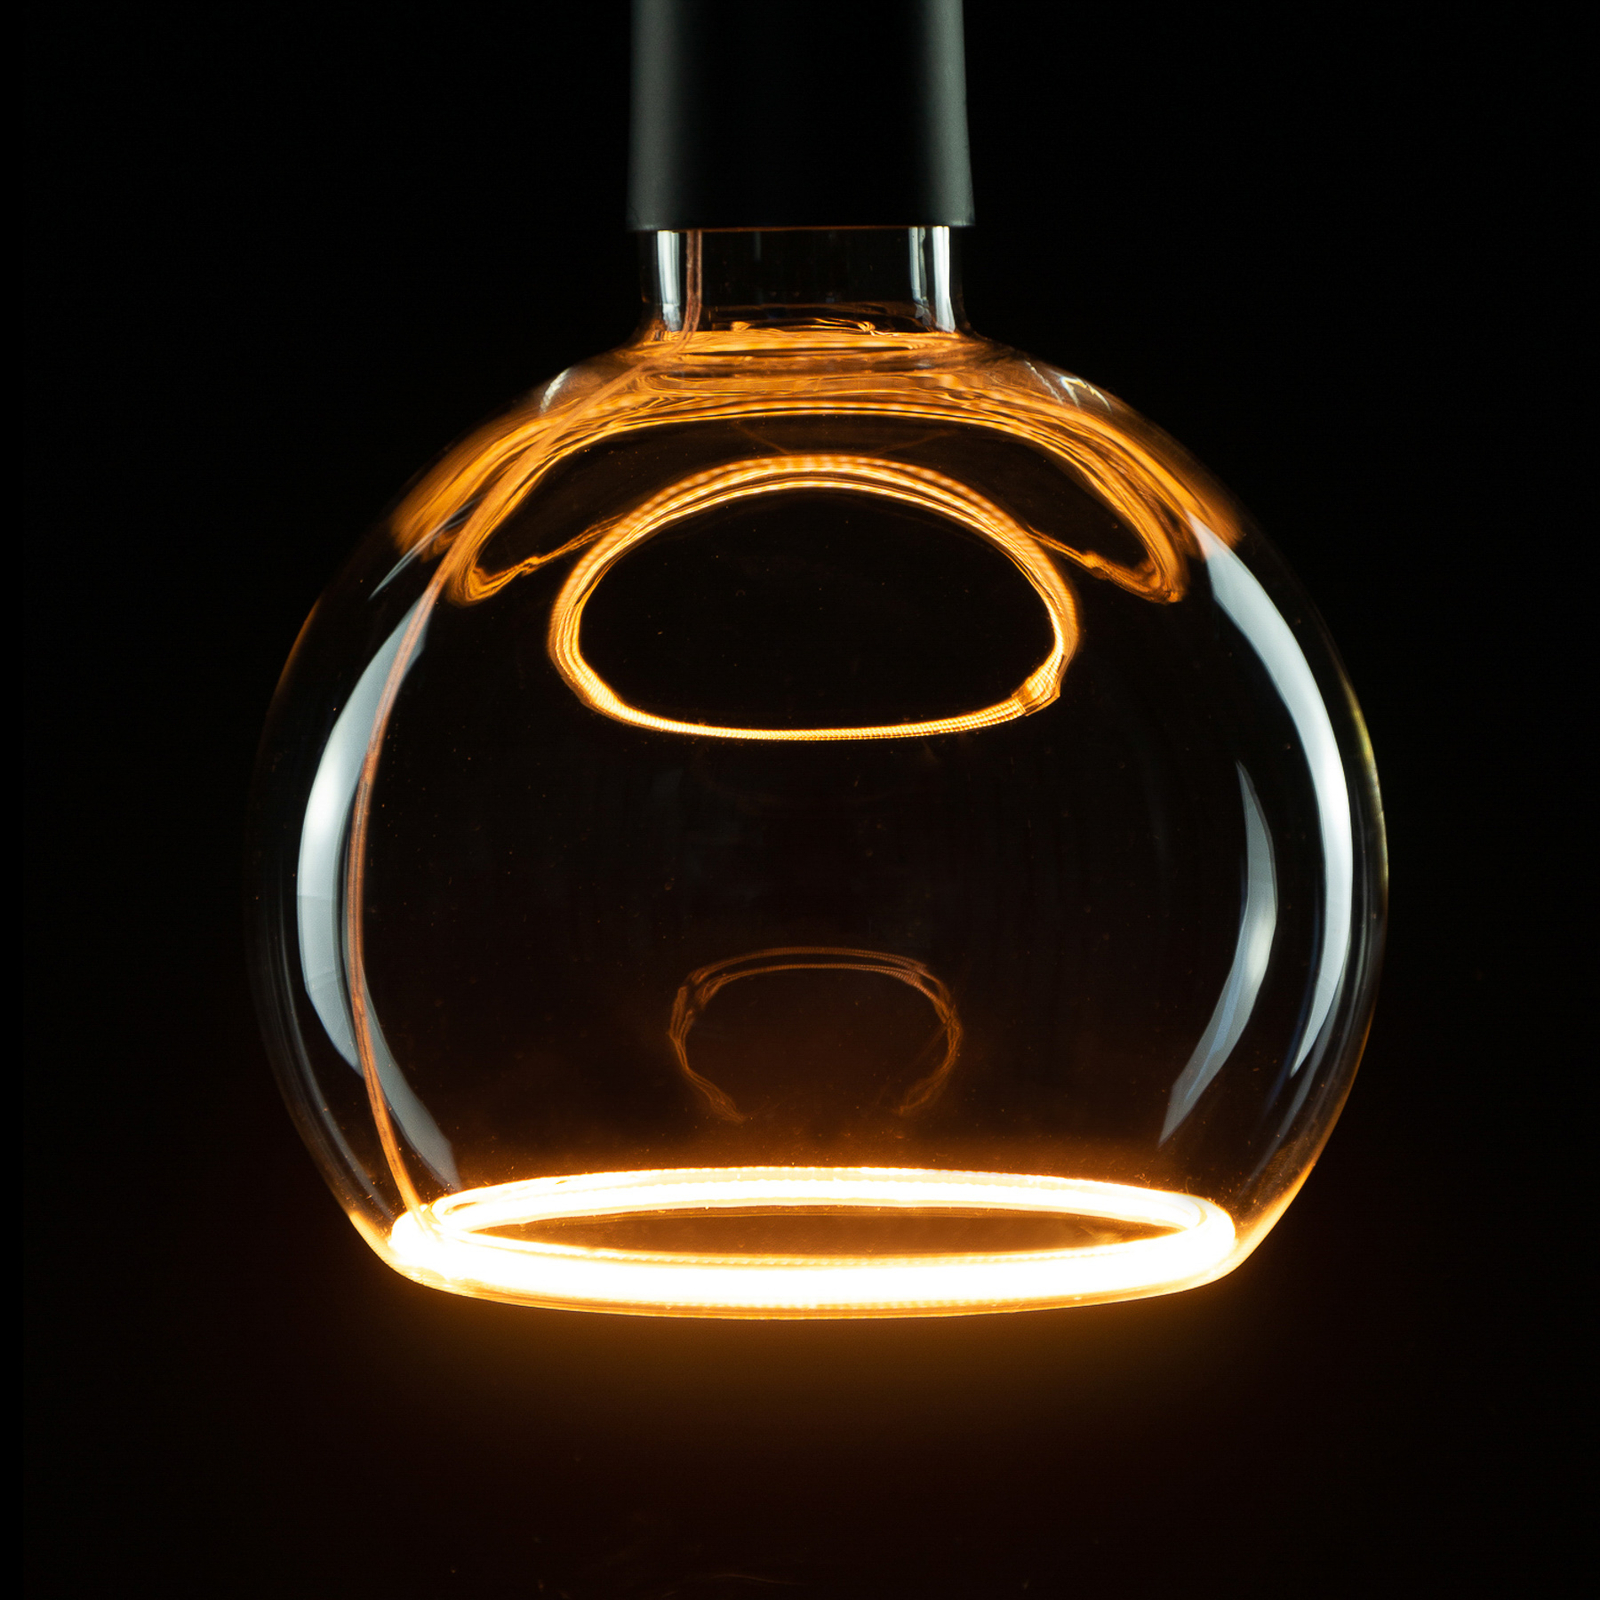 SEGULA LED floating bollamp G150 E27 4,5W helder